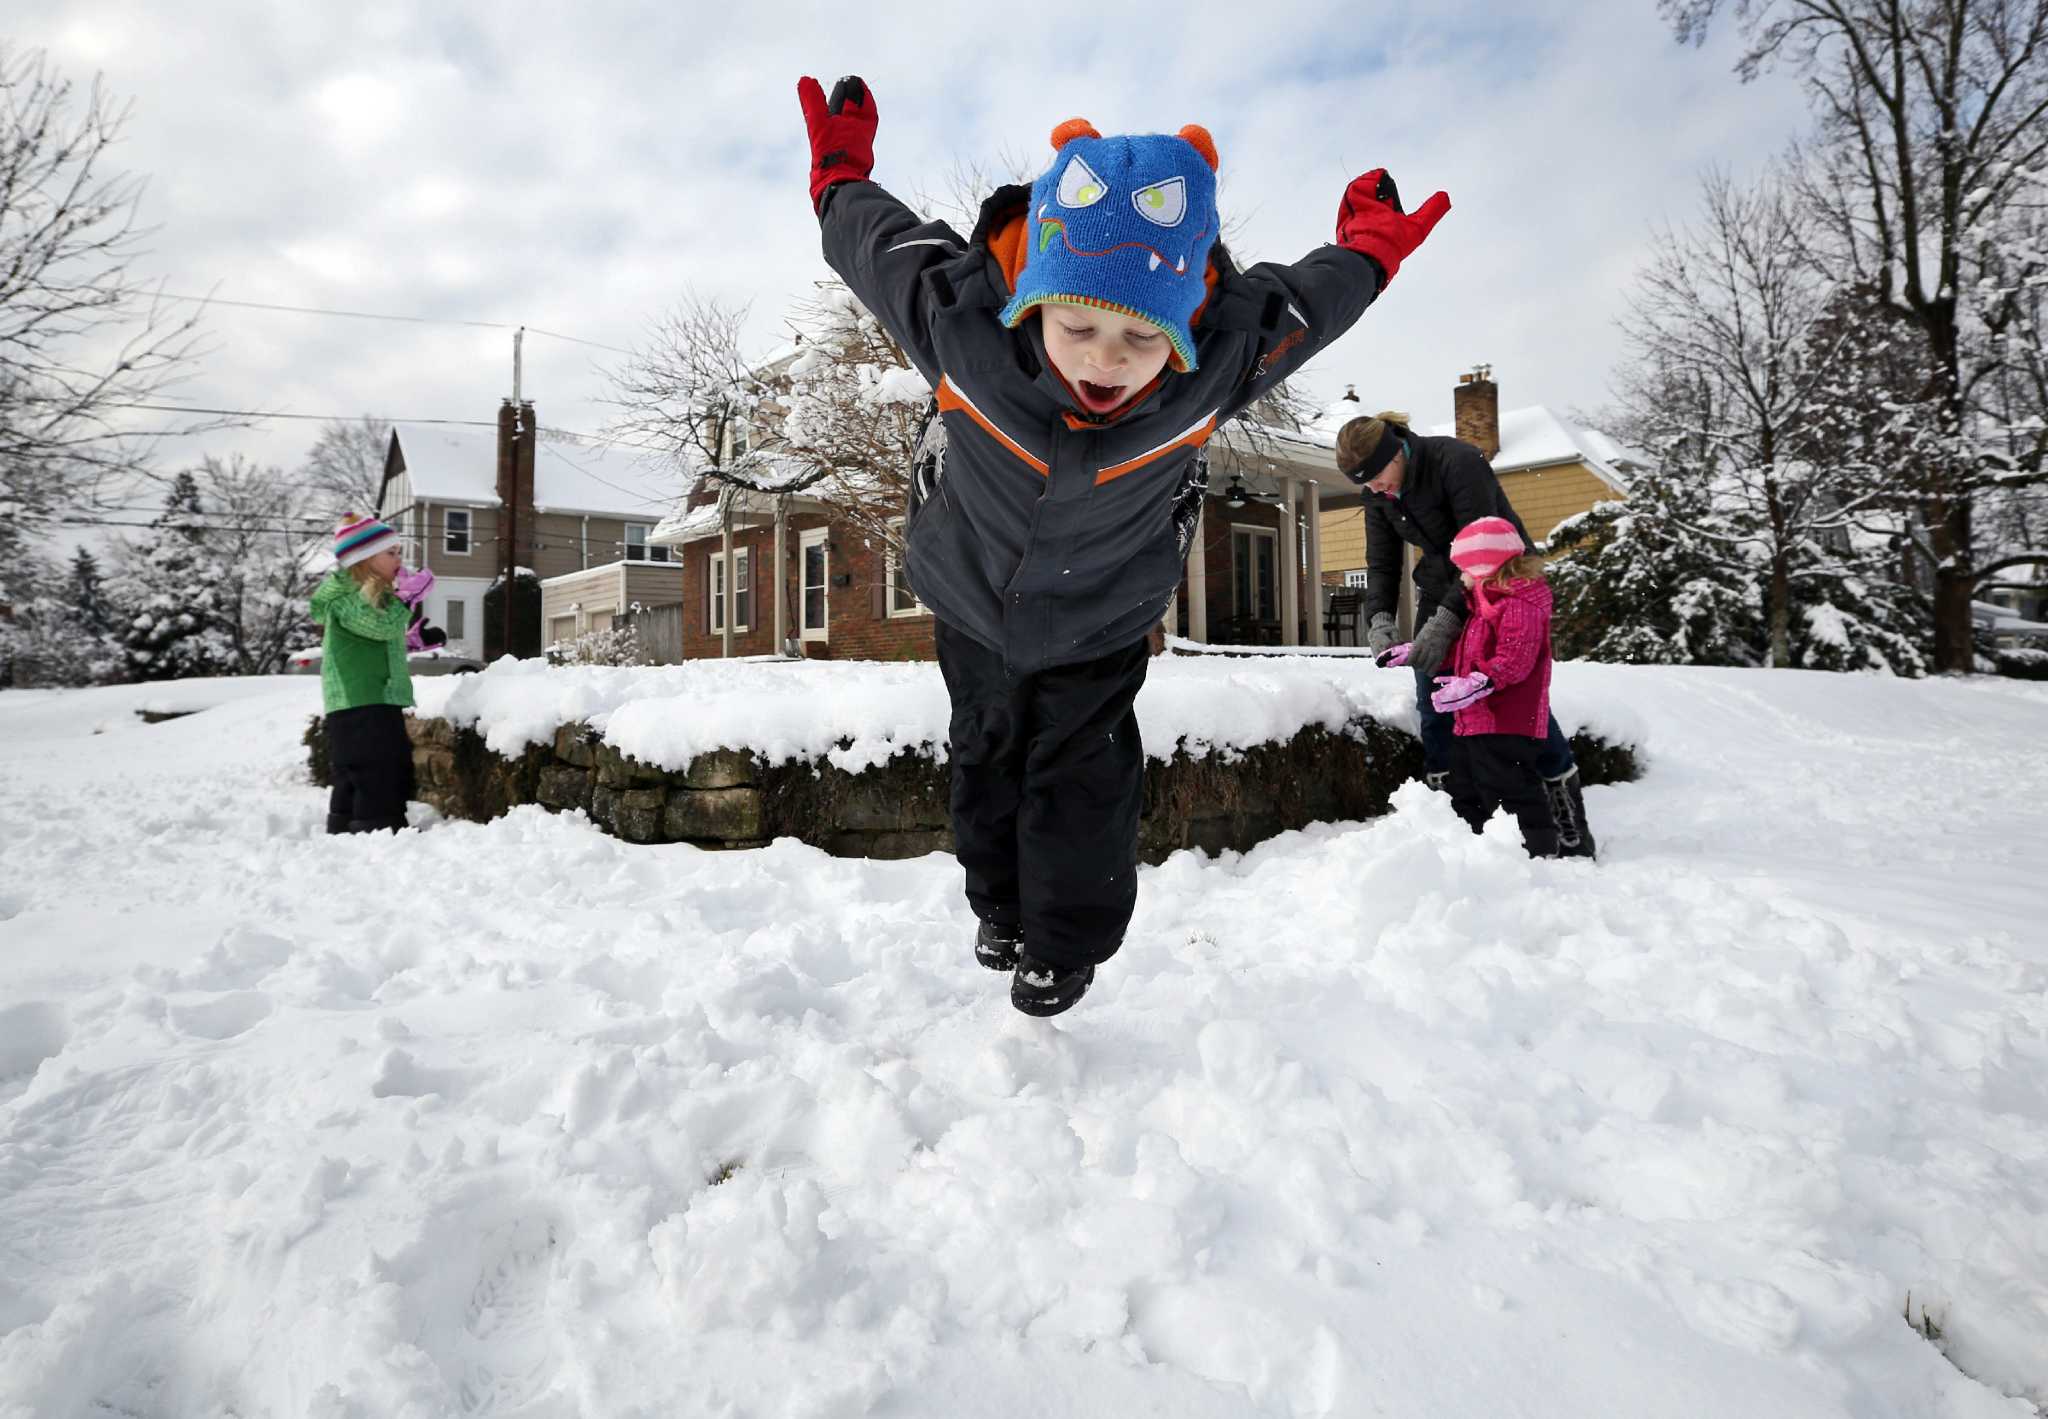 Играть в снежки кататься. Зимние развлечения на улице. Зимние развлечения для детей. Развлечения для детей на улице зимой. Зимнее развлечение с детьми во дворе.